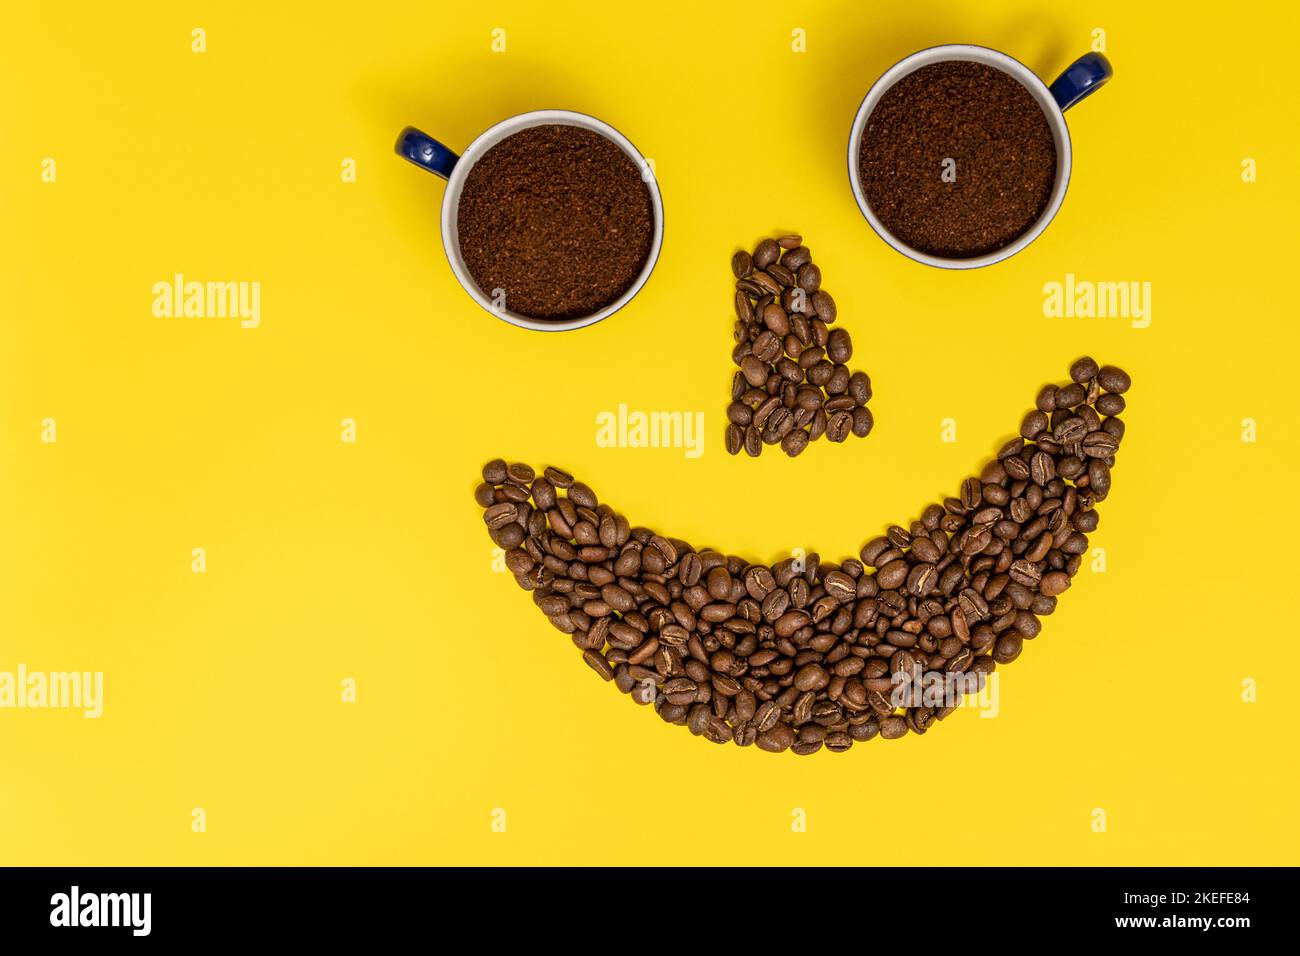 Emoticon sorridente, labbra in chicchi di caffè e occhi in tazze di caffè, composizione su sfondo giallo. Foto Stock